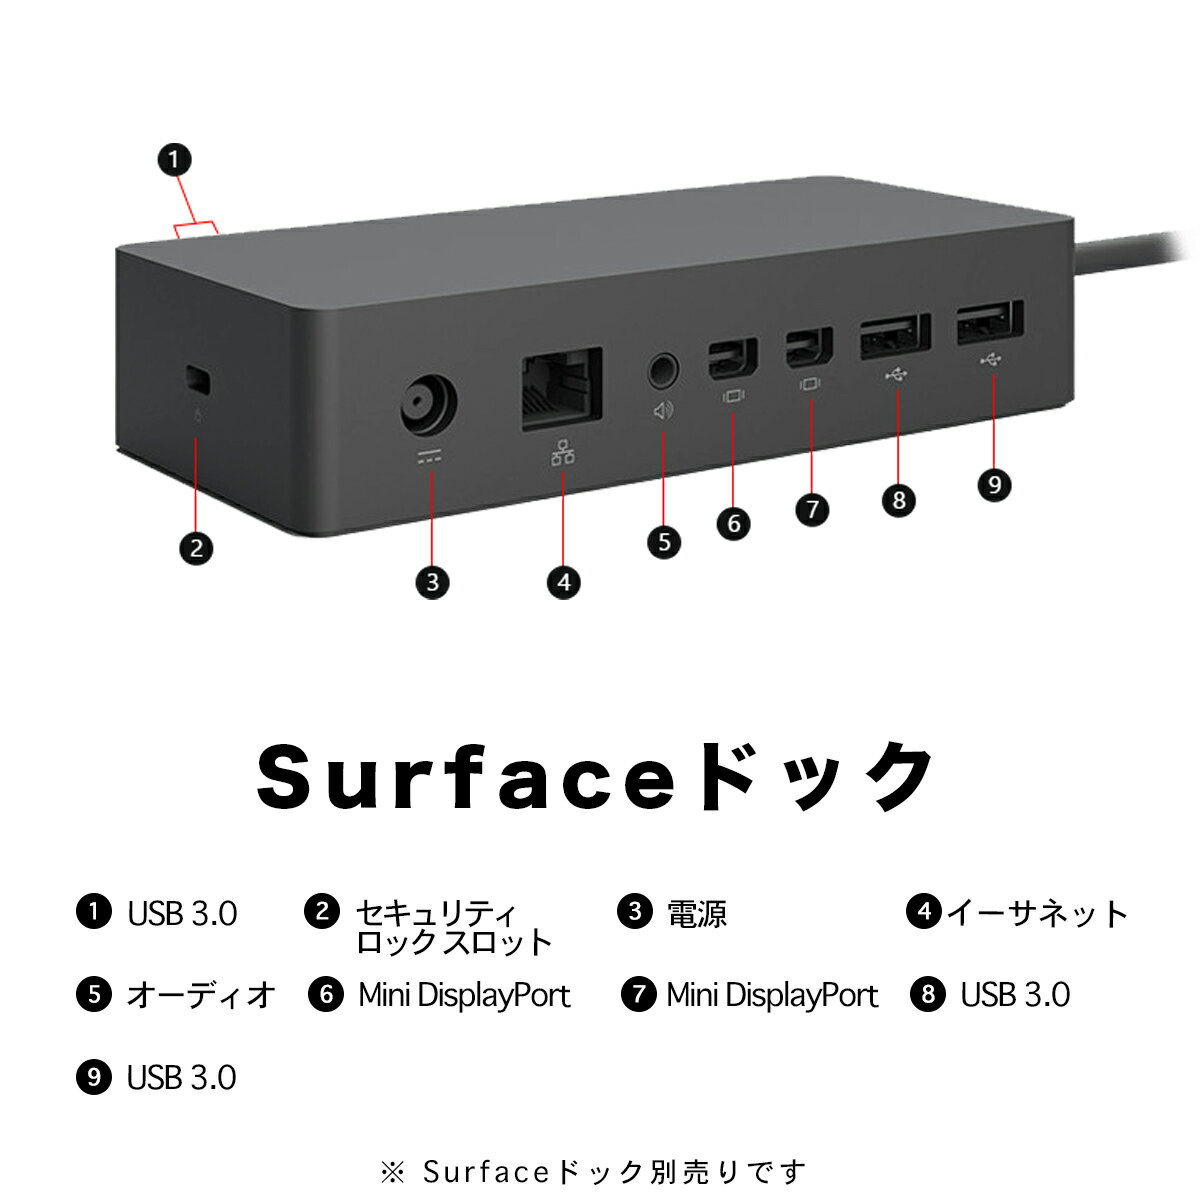 ★中古★　Surface Pro 3 / Pro 4 / USBハブドッキングステーション用のSurface Proドック、ギガビットイーサネットポート、 HDMI VGA DPディスプレイポート